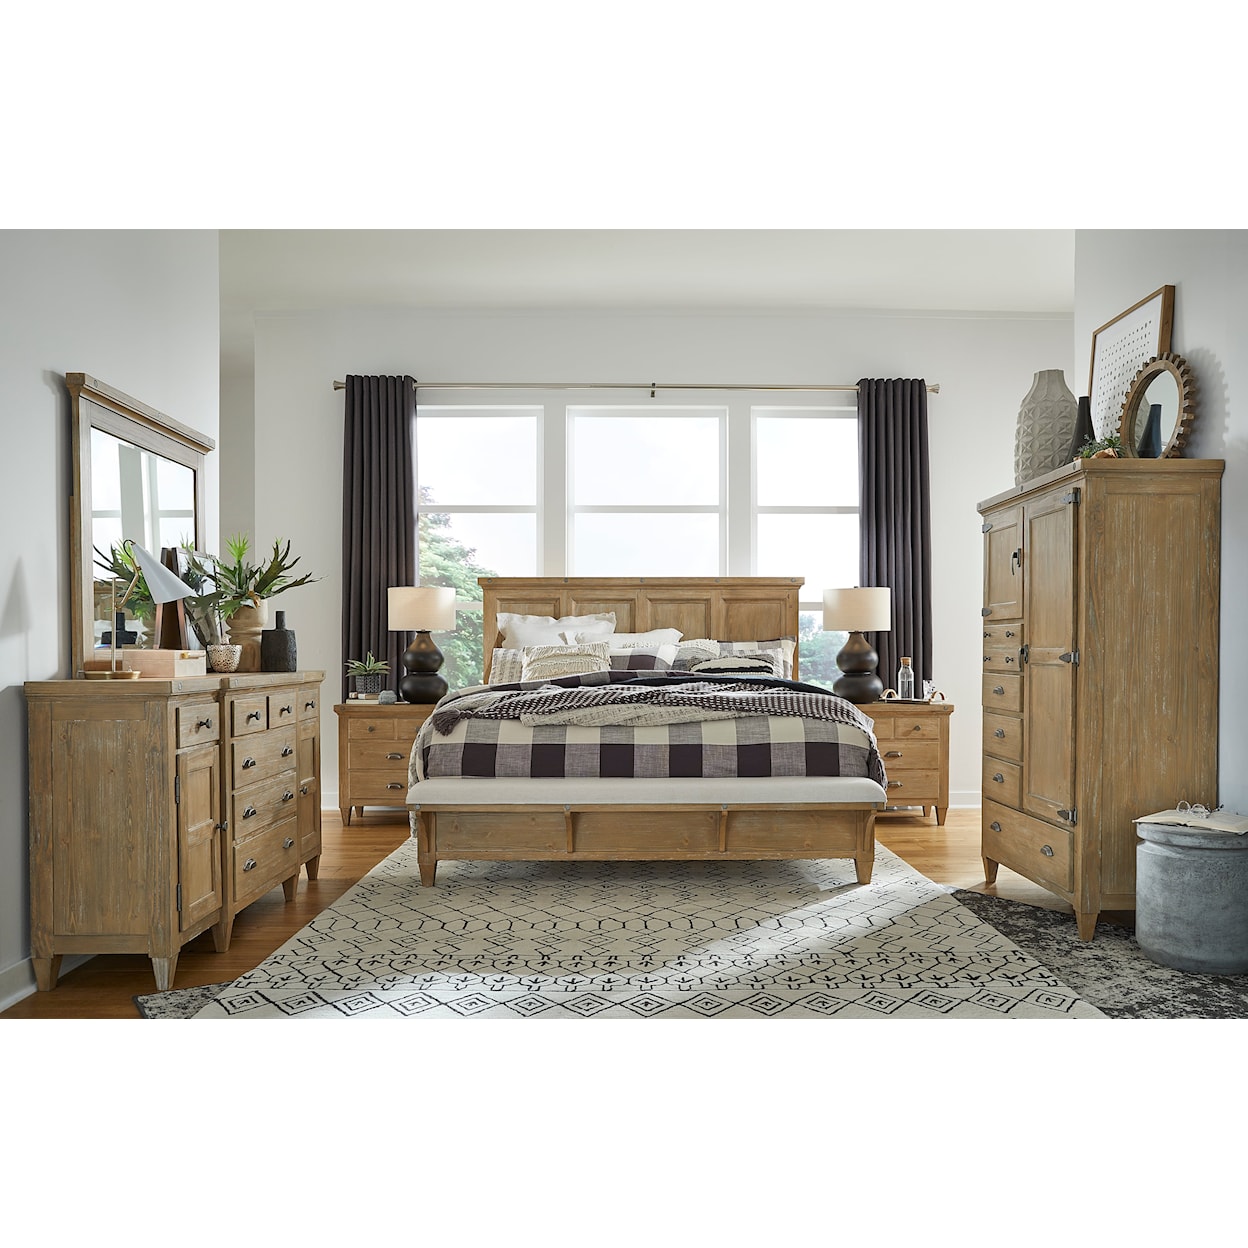 Magnussen Home Lynnfield Bedroom Queen Panel Bed with Bench